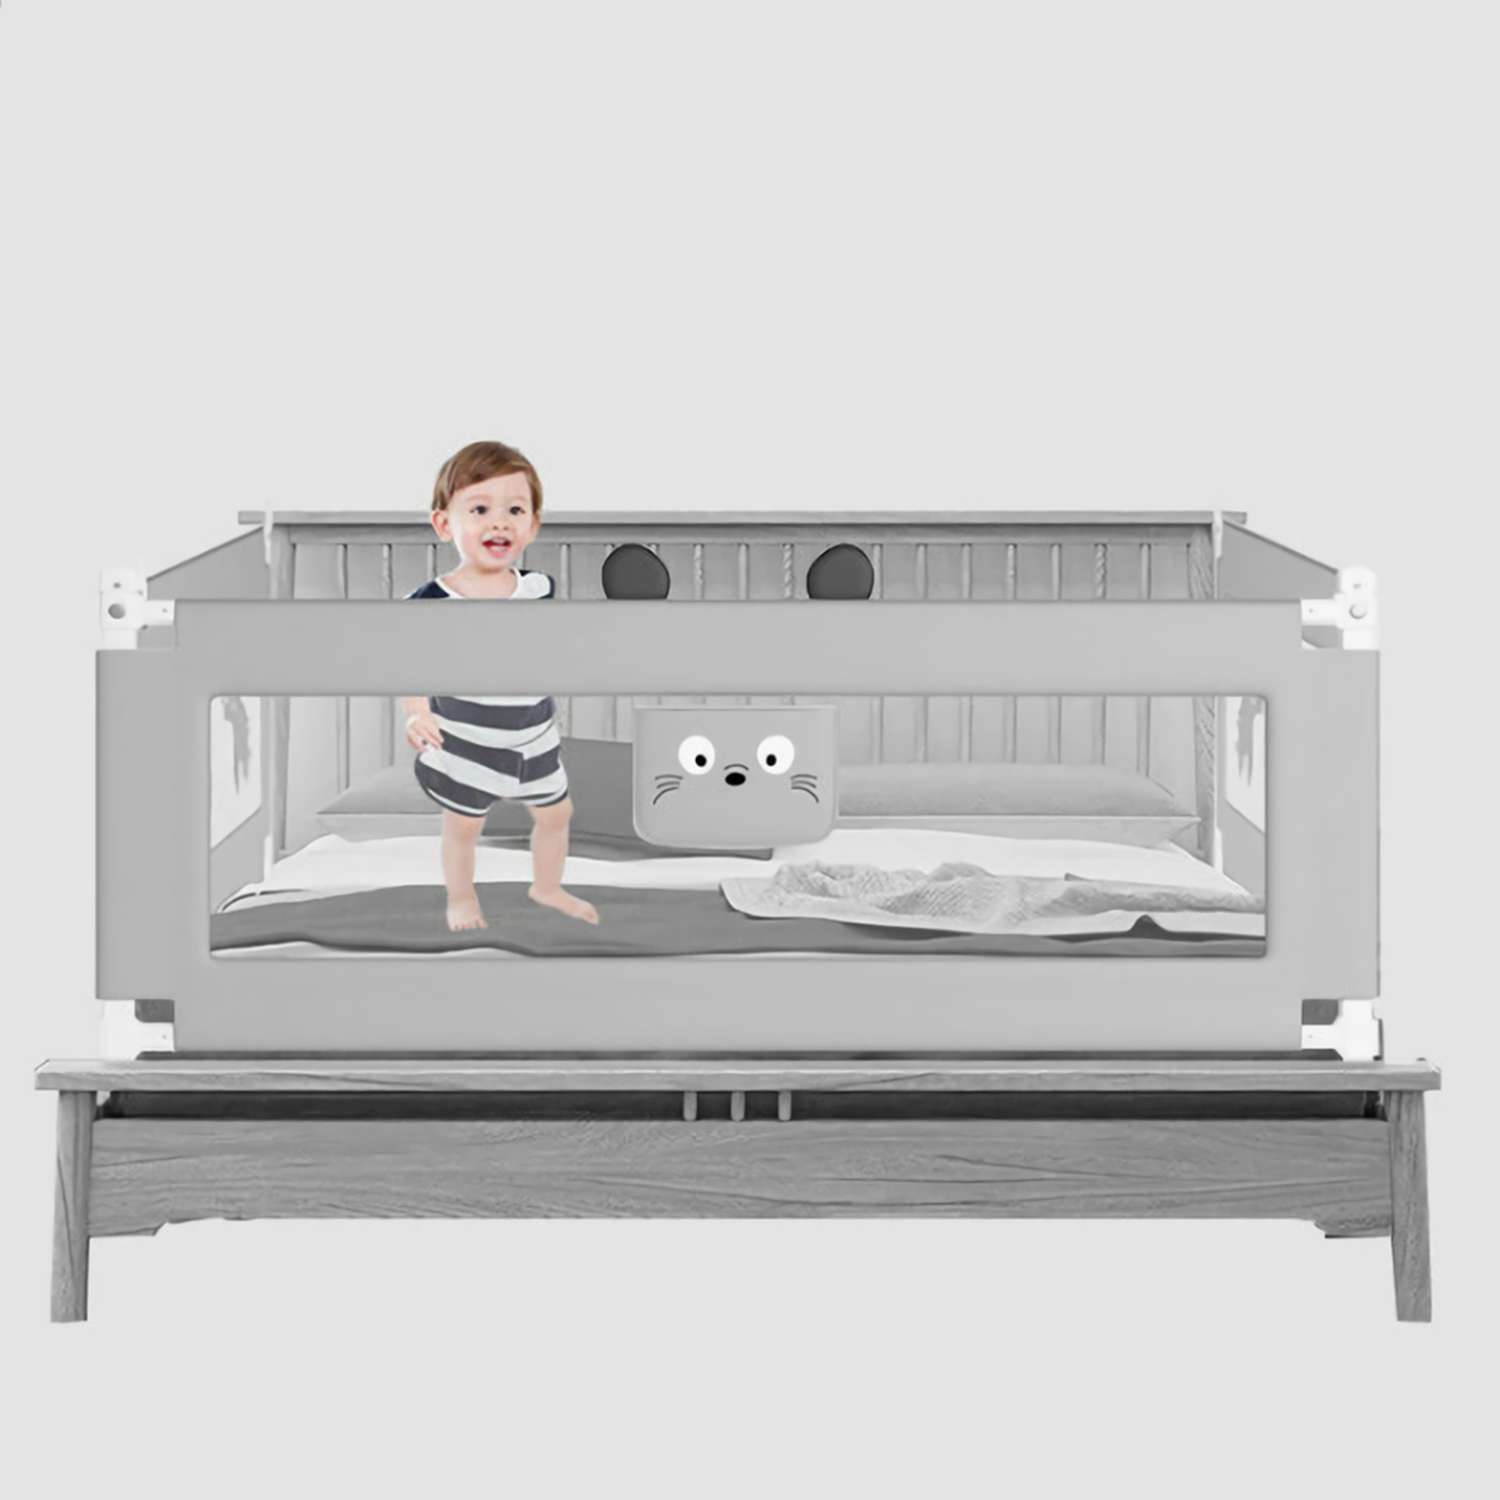 Защитные бортики для детской кровати: купить или сделать самому